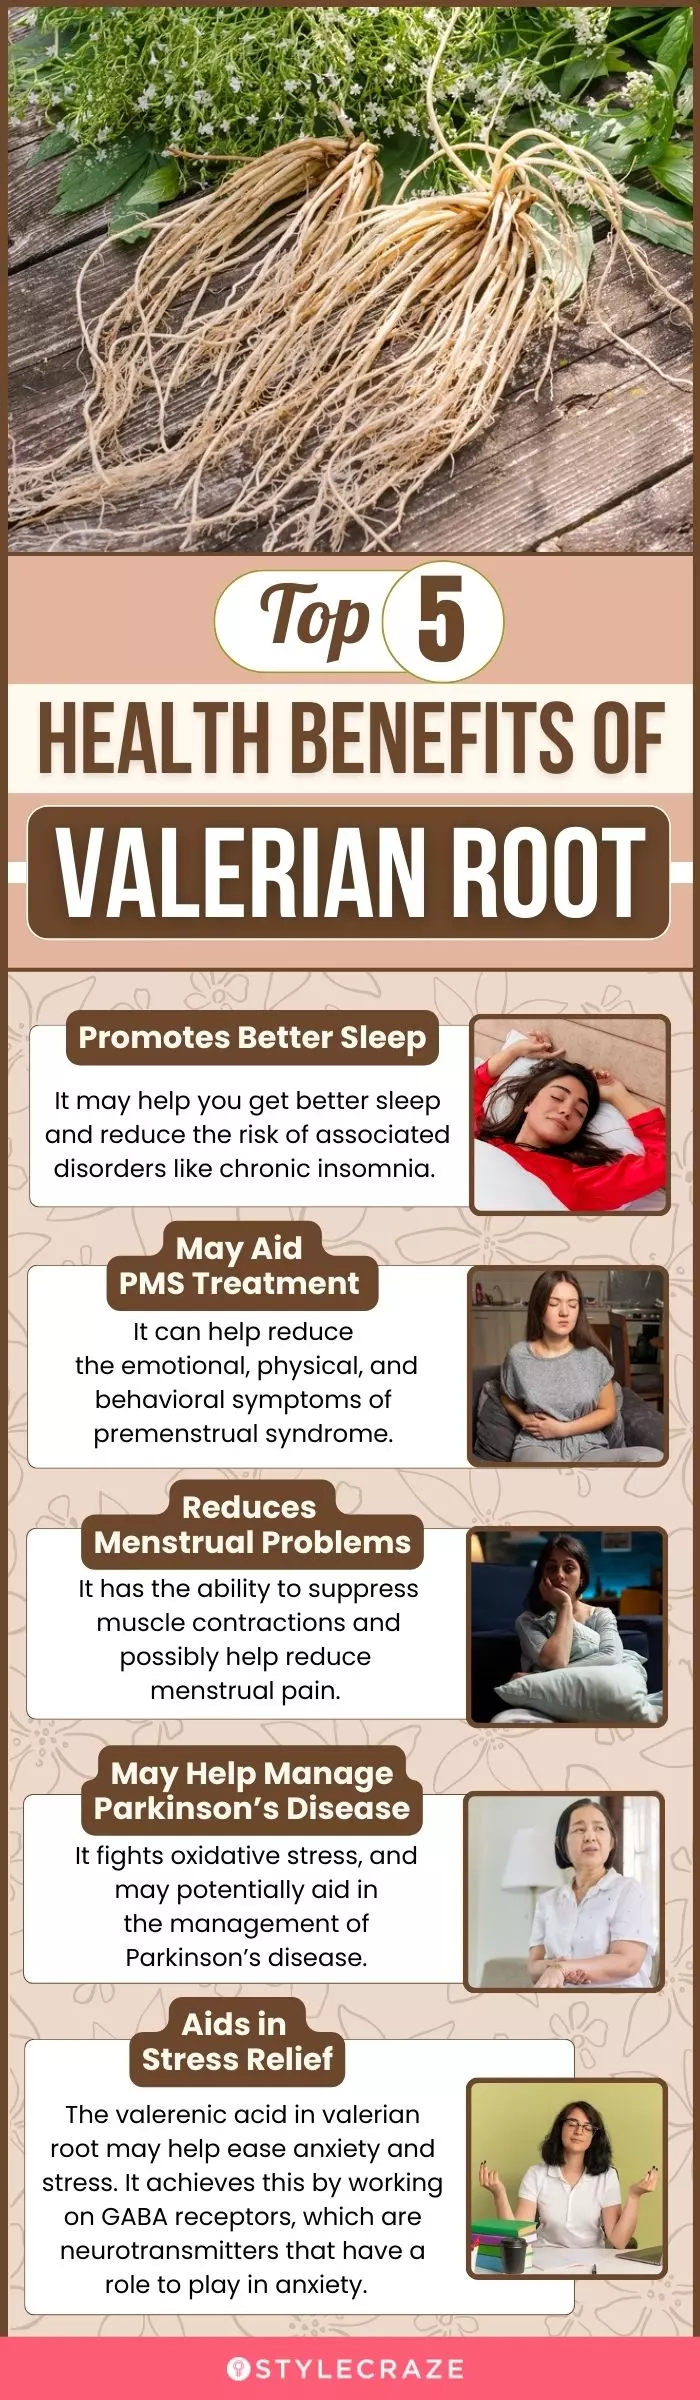 top 5 health benefits of valerian root (infographic)